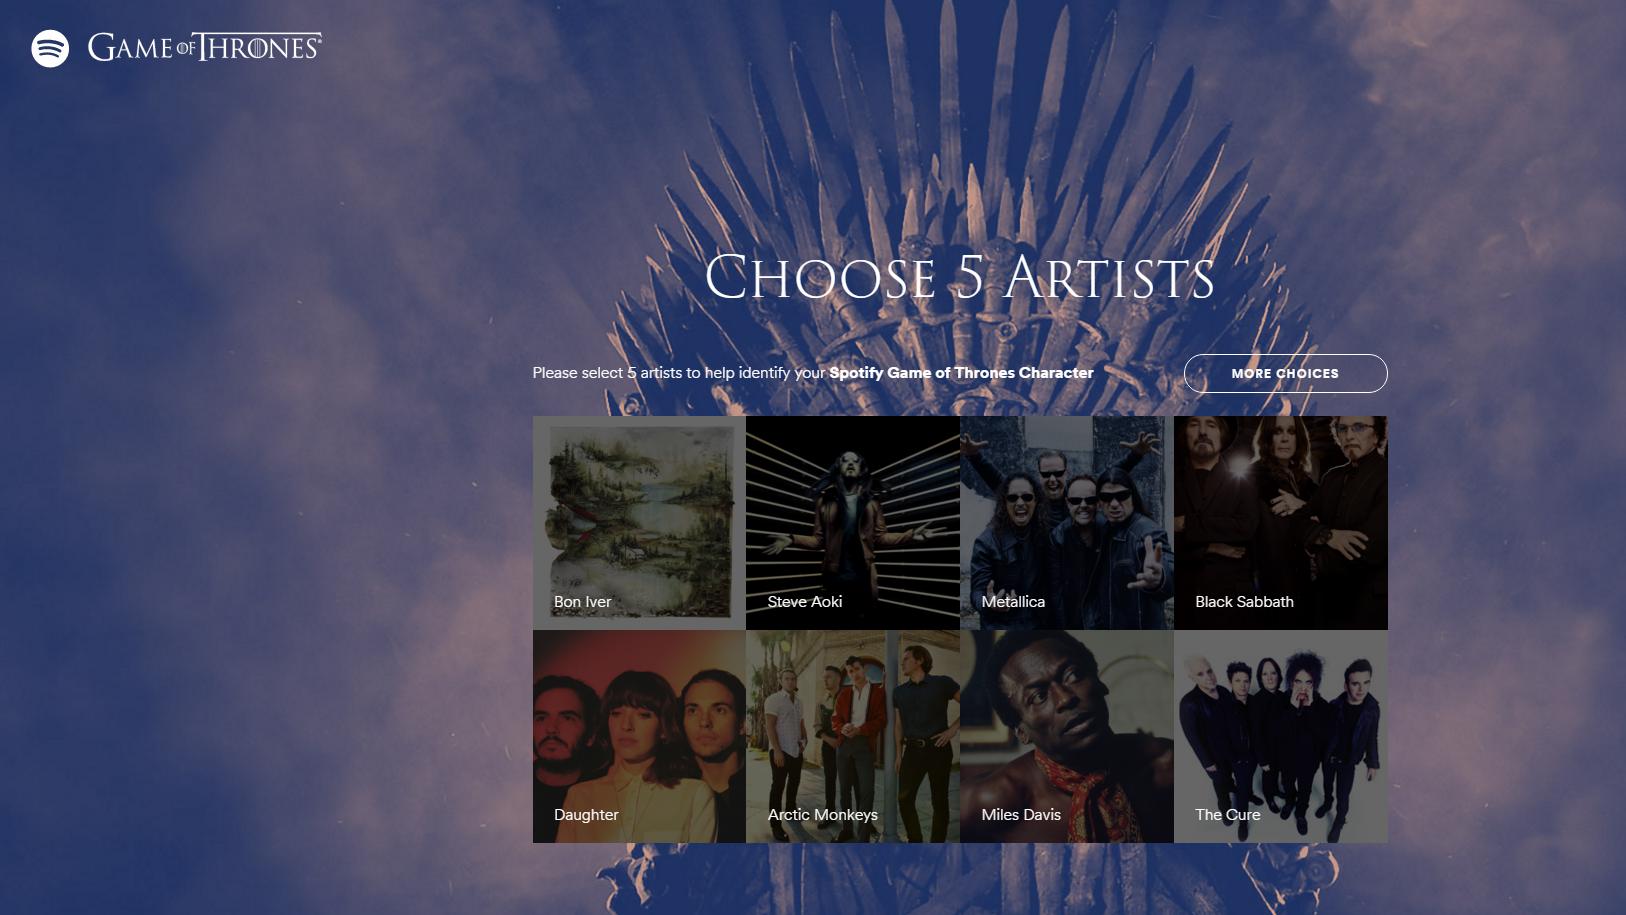 Nettsiden forteller deg hvilken Game of Thrones-karakter du er, basert på musikkpreferansene.